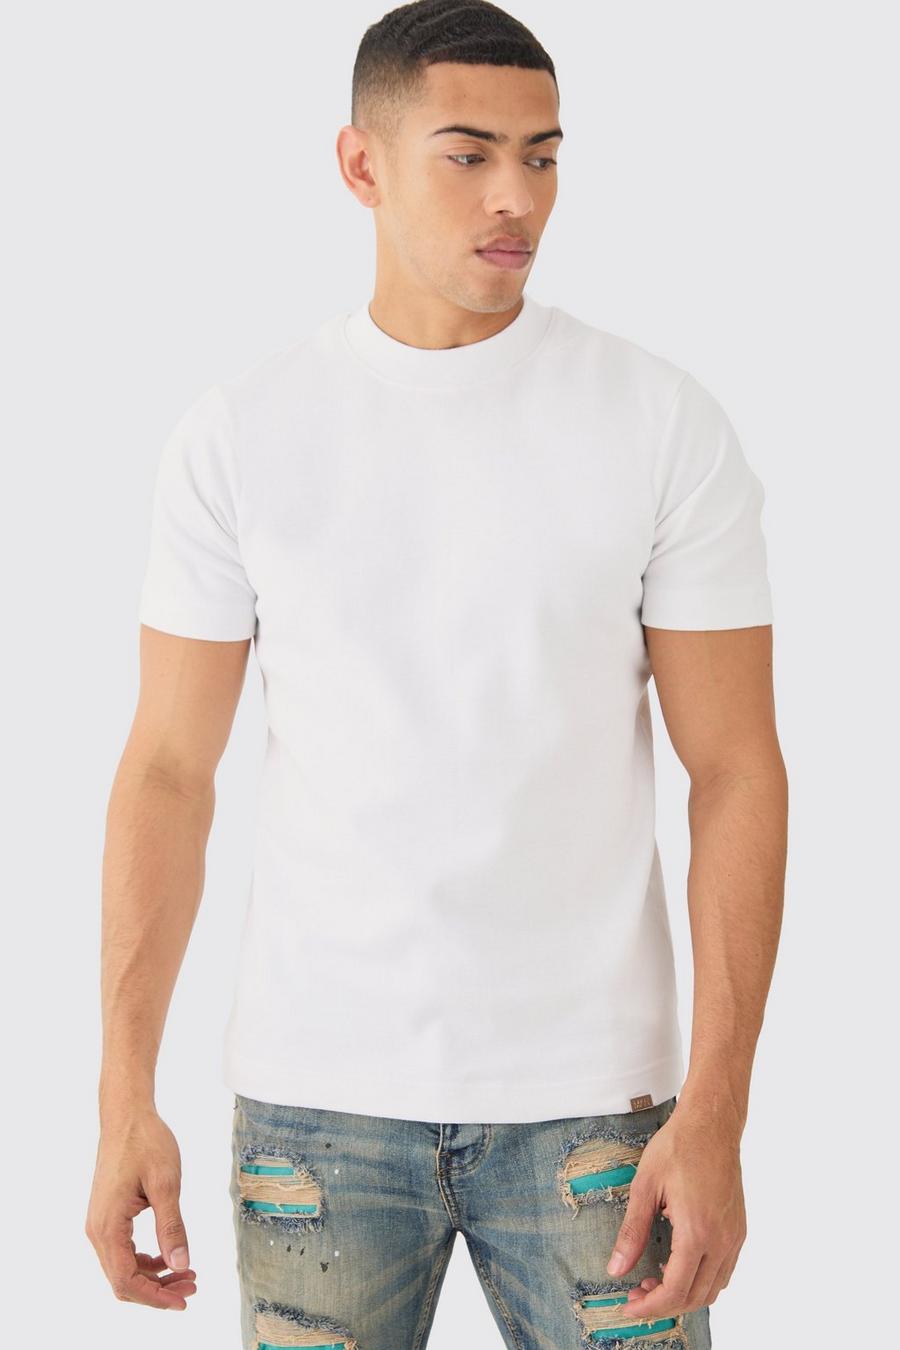 T-shirt Man Slim Fit in maglia intrecciata pesante con girocollo esteso, White